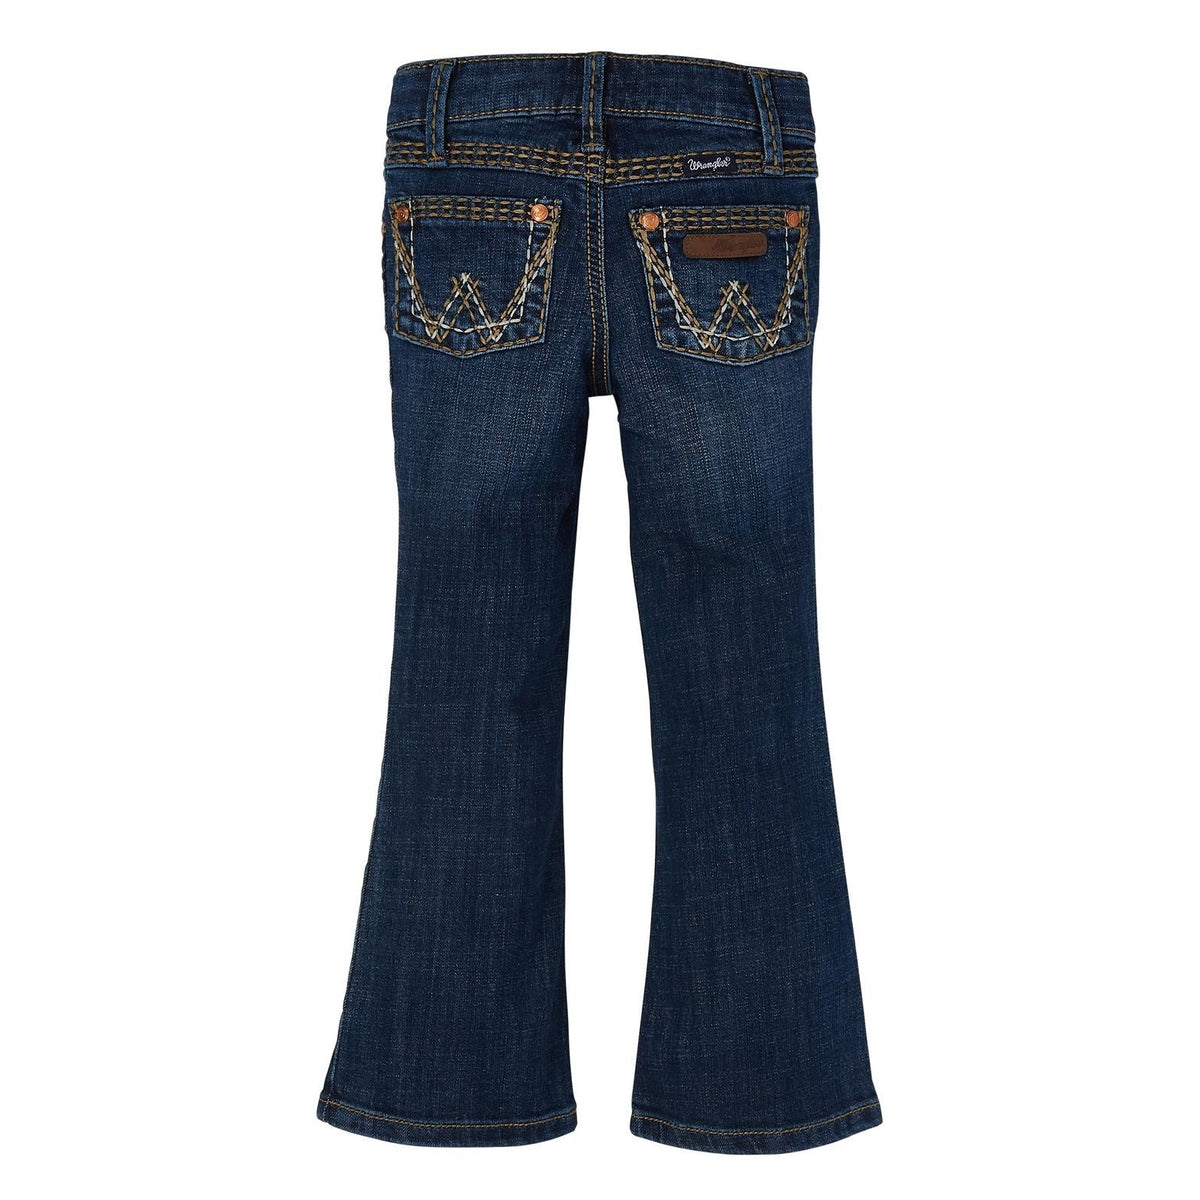 Wrangler Girl's Bootcut Jeans in Denver